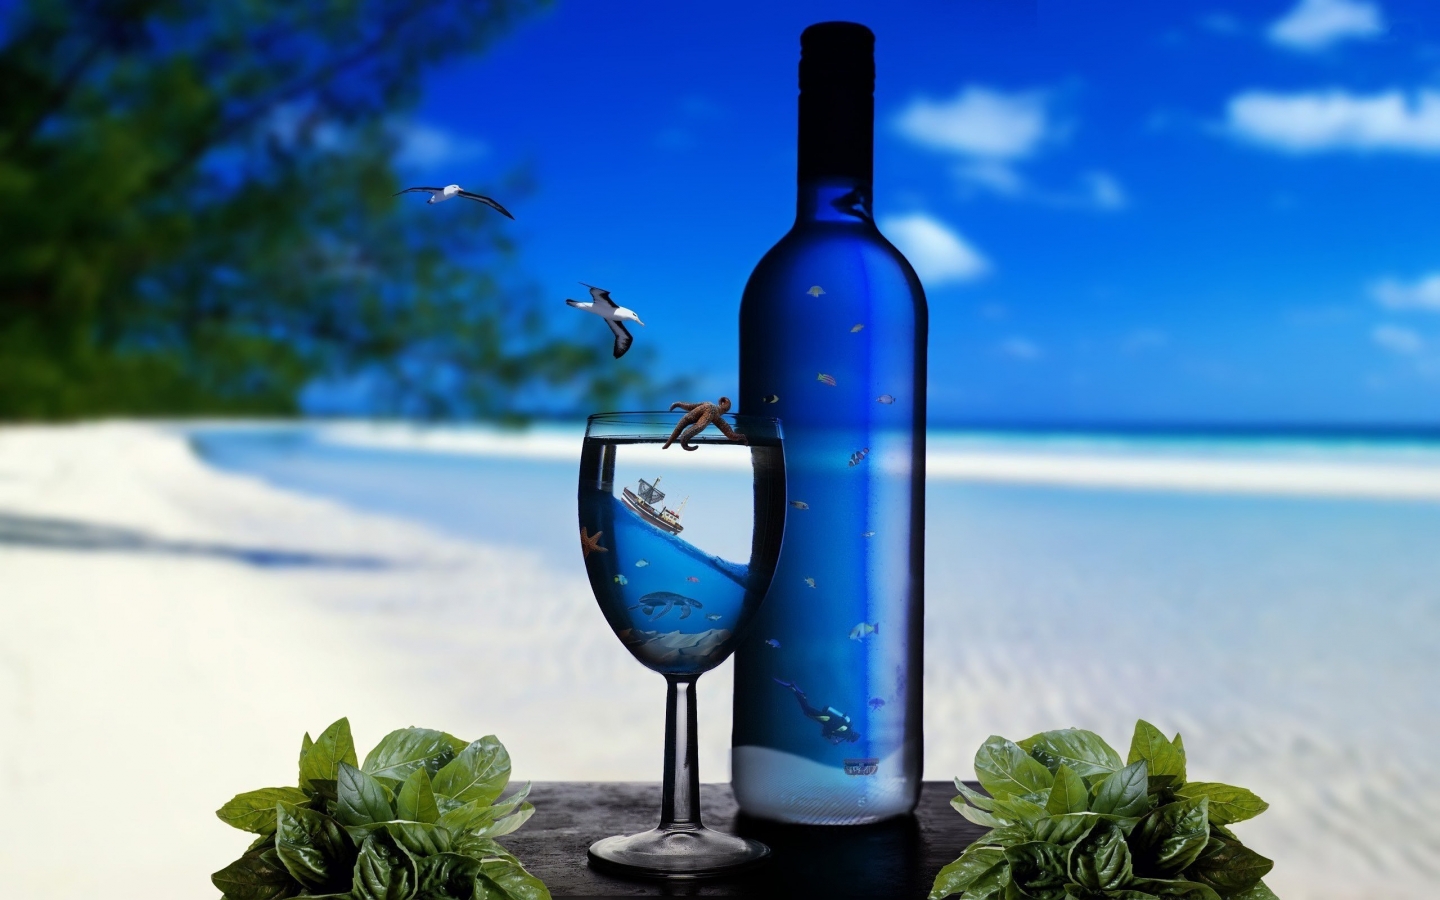 Ocean Glass Bottles for 1440 x 900 widescreen resolution